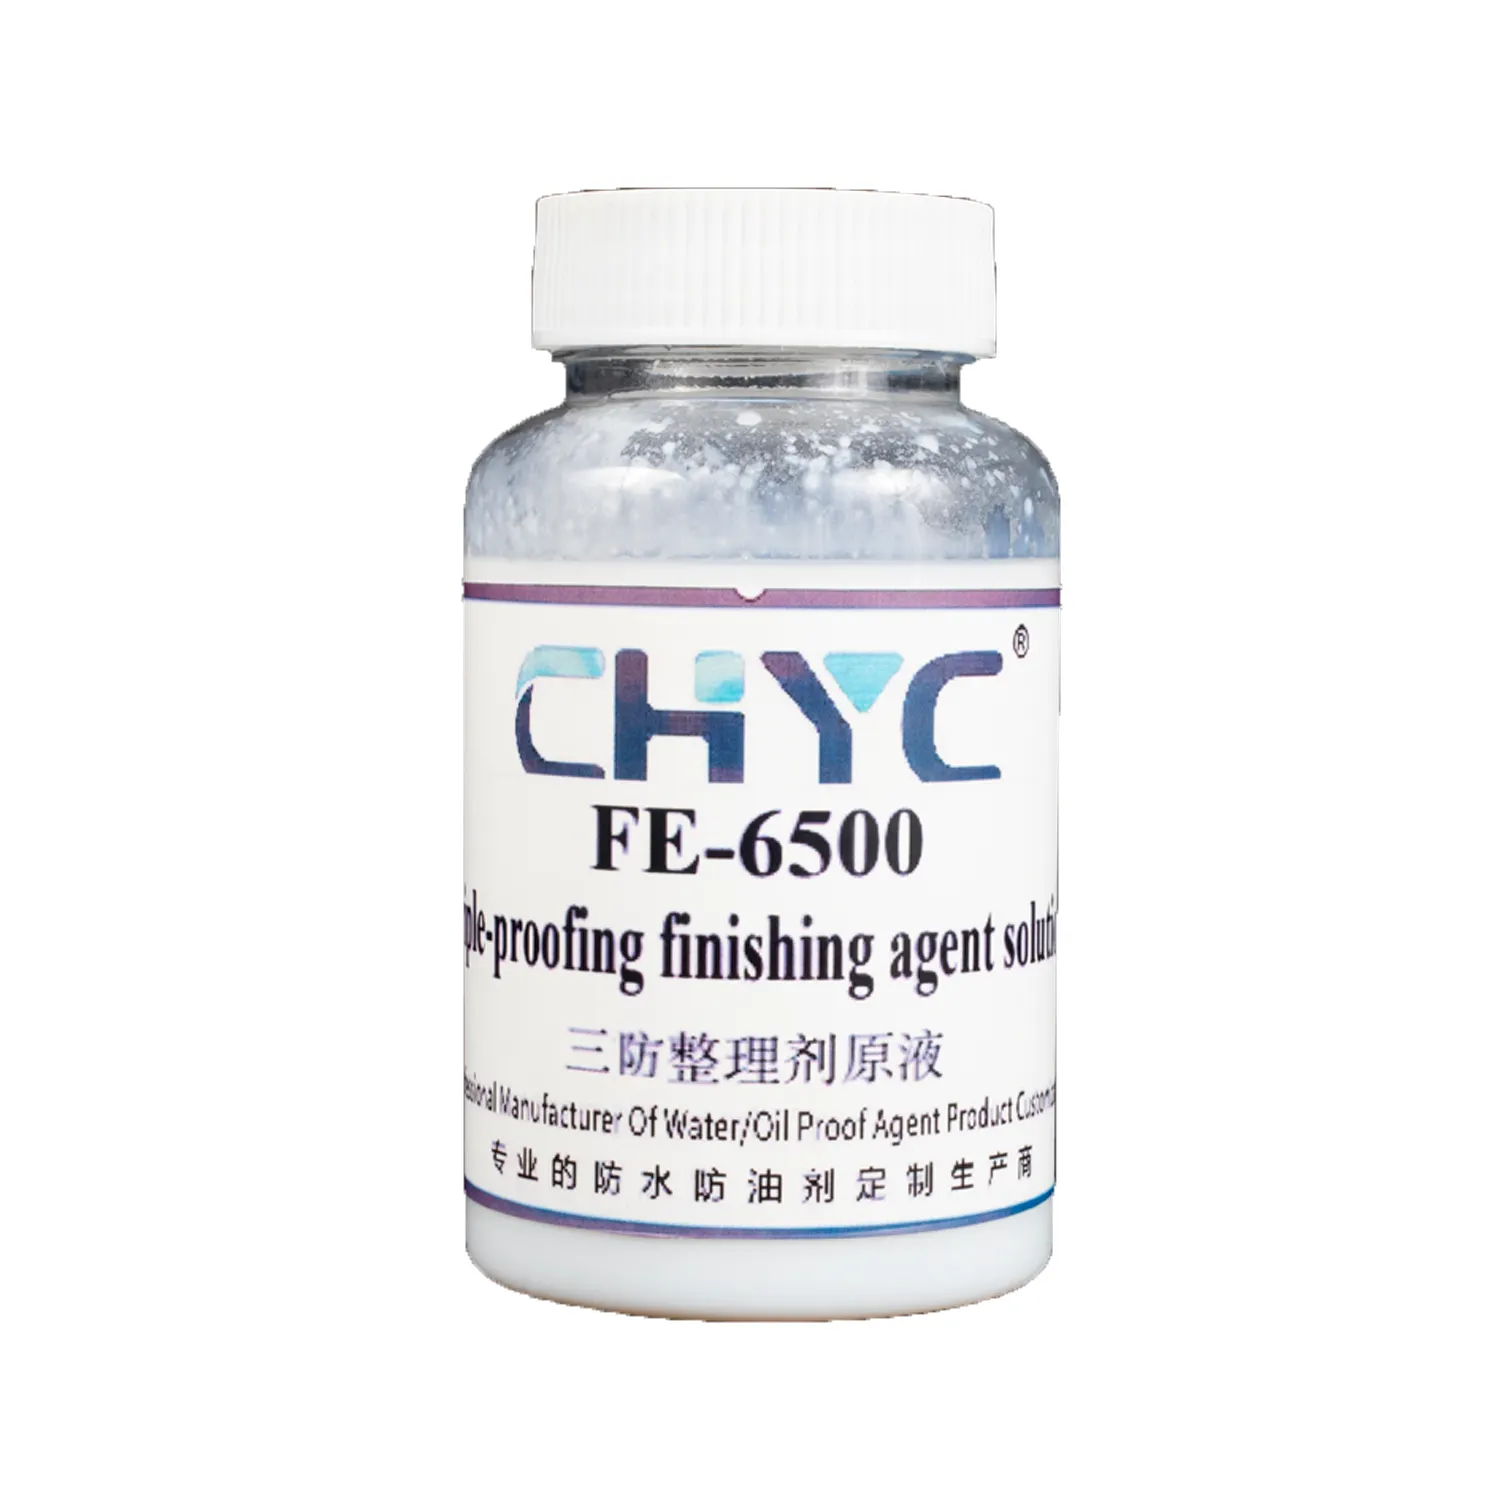 プロモーションポリマー添加剤化学薬品C8 FE-6500ファブリックトリプルプルーフ (水 & 油 & ステイン) 防水化学薬品